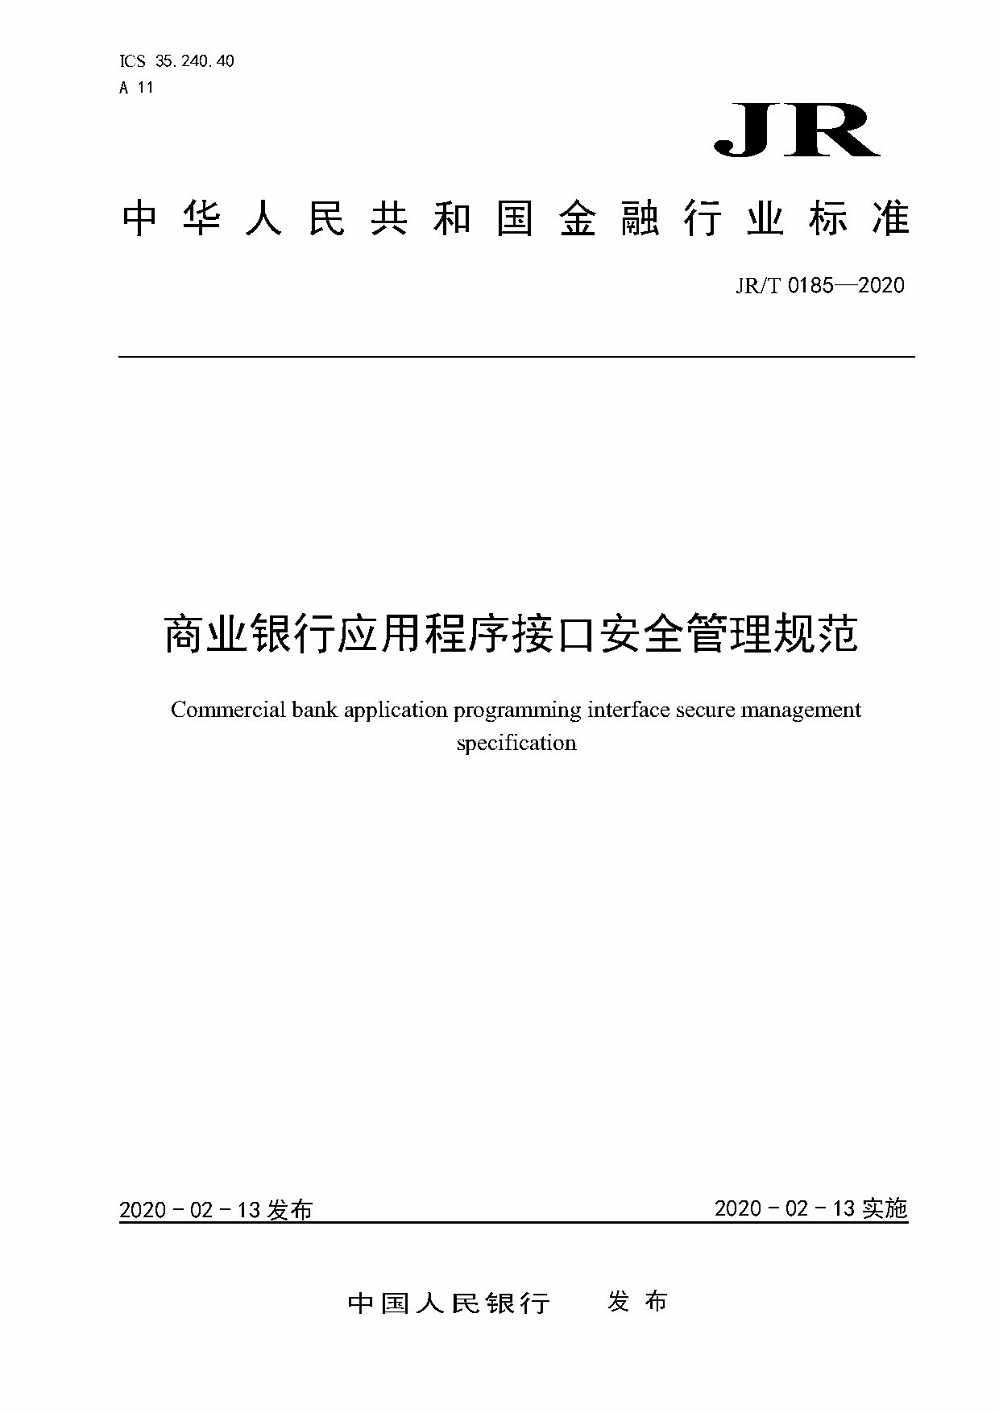 《商业银行应用程序接口安全管理规范》（JR/T0185-2020）【全文附PDF版下载】